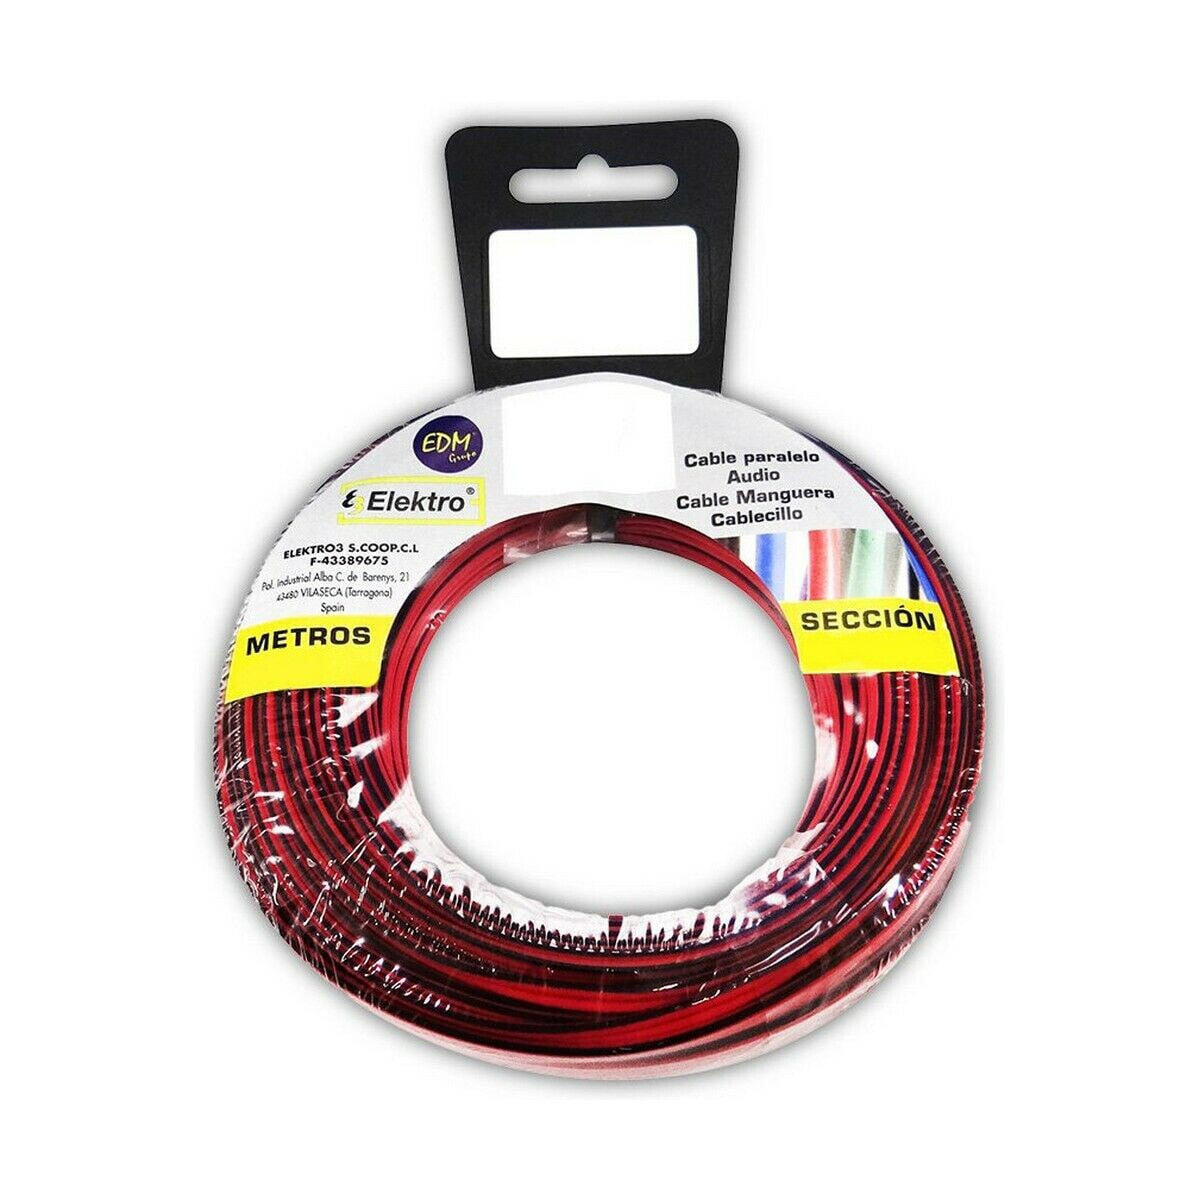 Аудио кабель EDM 2 x 0,75 mm 10 m Красный/Черный